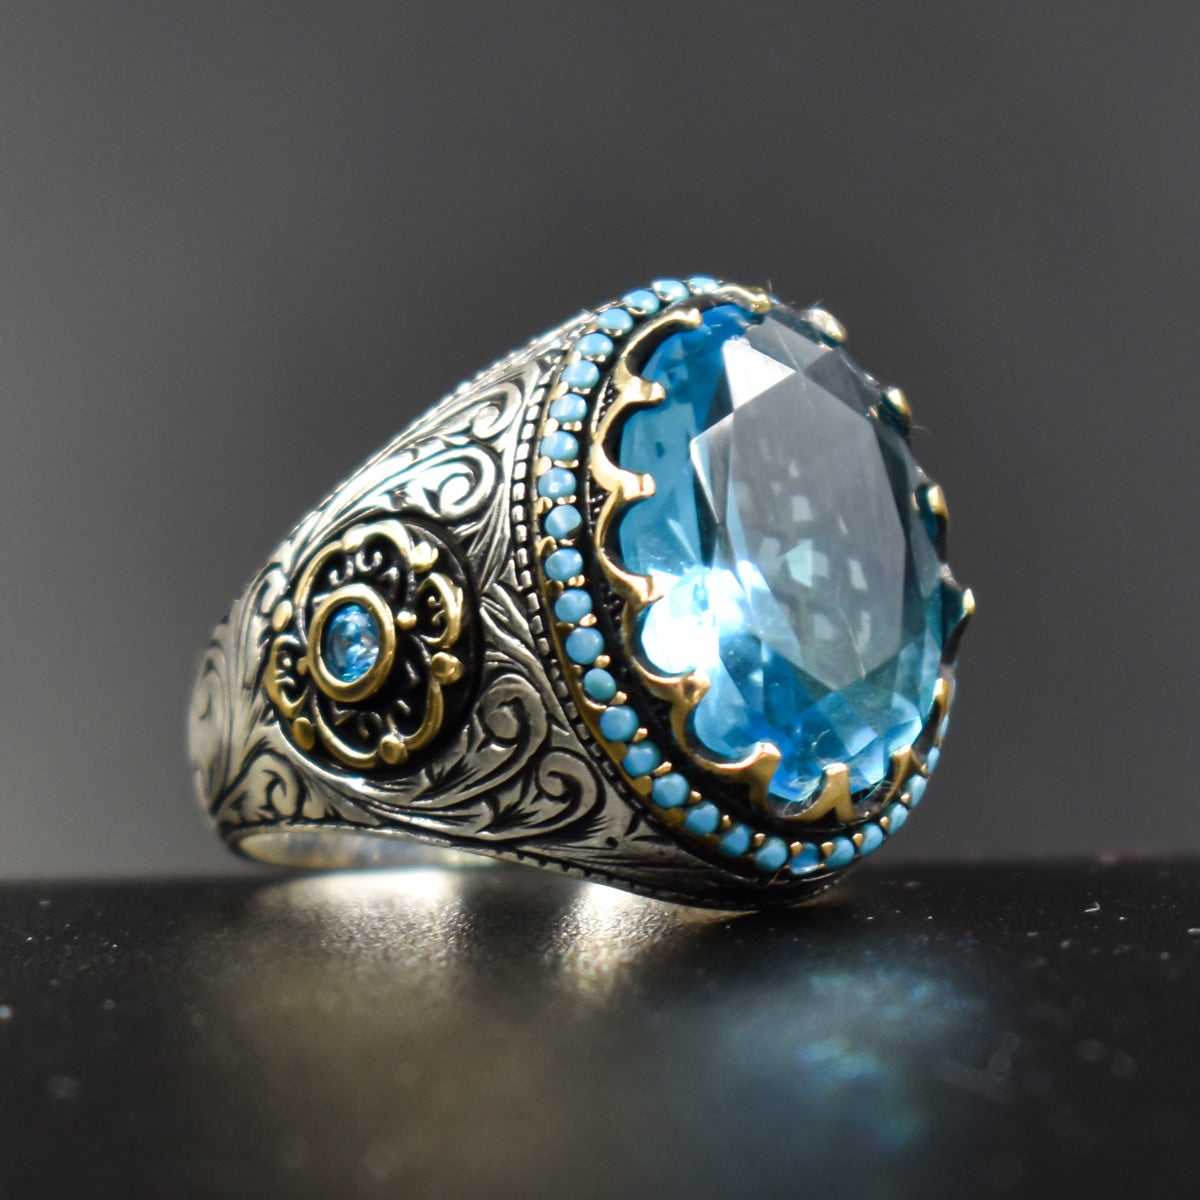 Blue Stone Handmade 925 Sterling Silver Ring LMR007 – Ring4Men